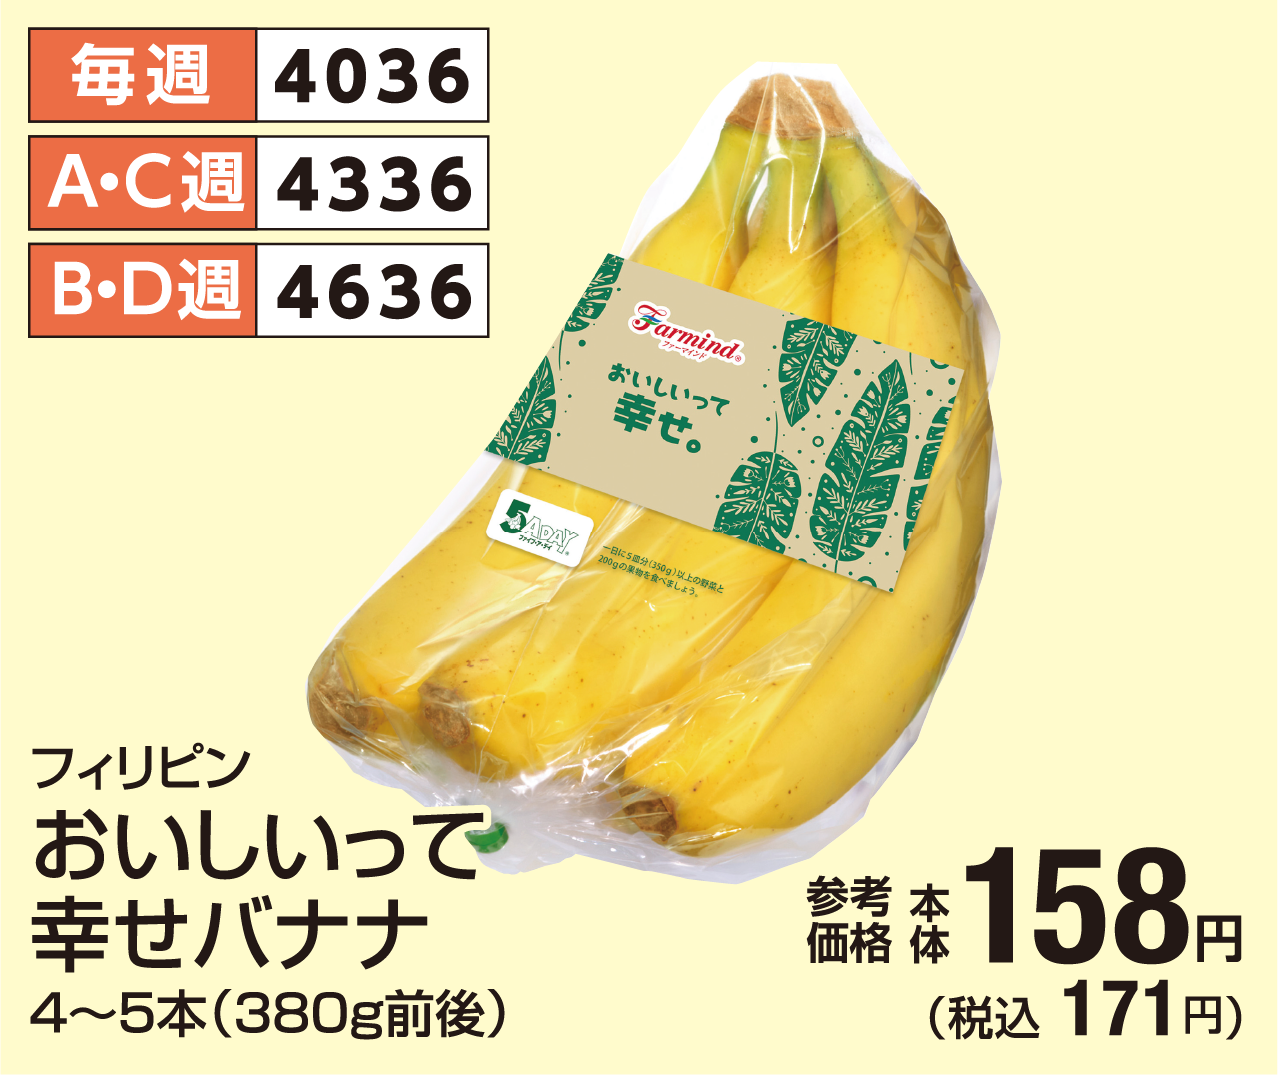 おいしいって幸せバナナ 参考価格 本体158円